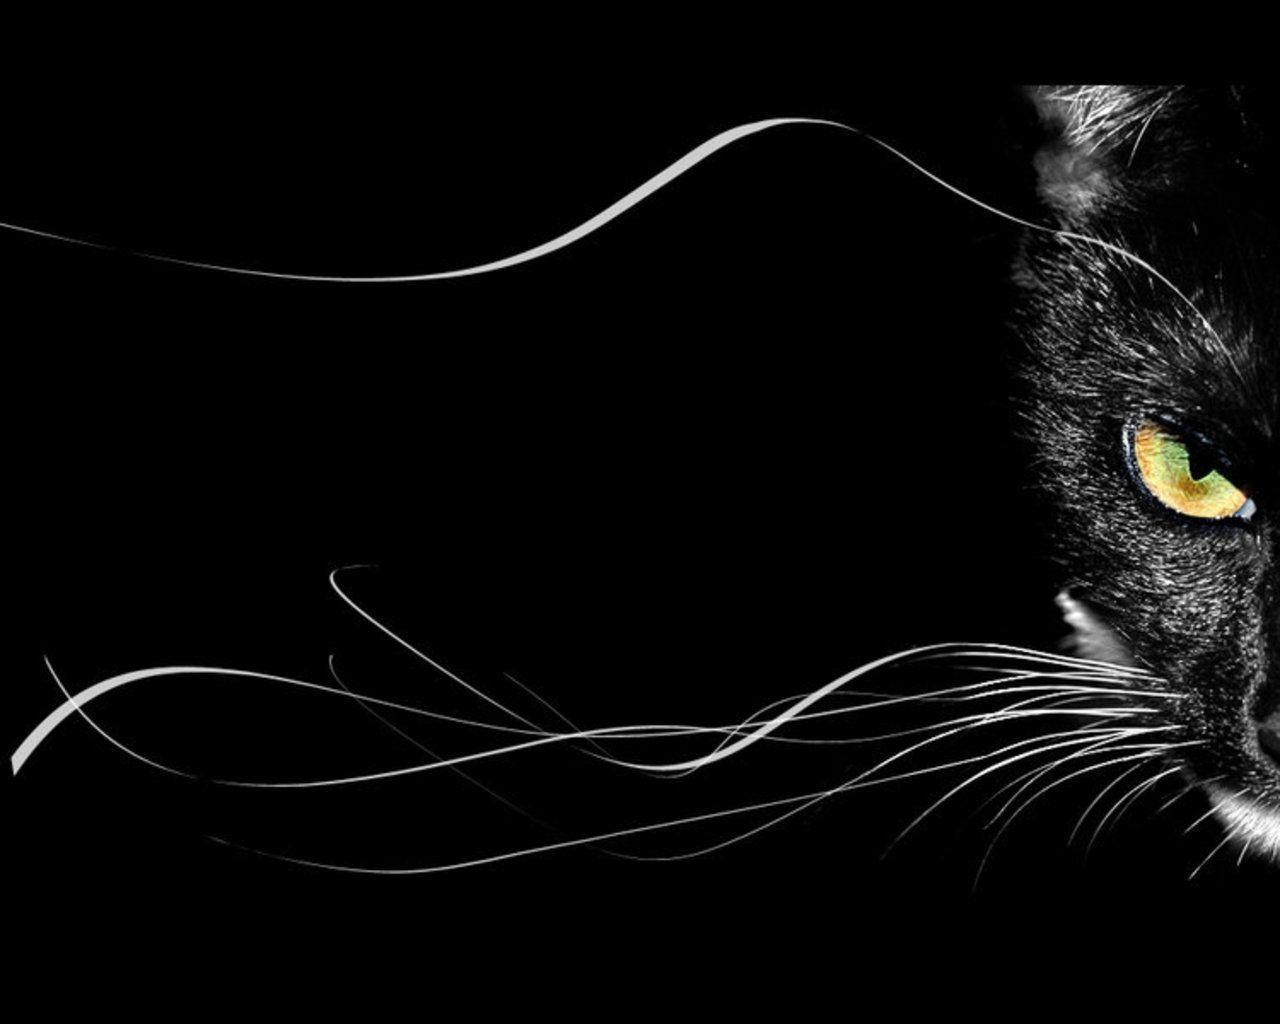 گربه سیاه (black cat)